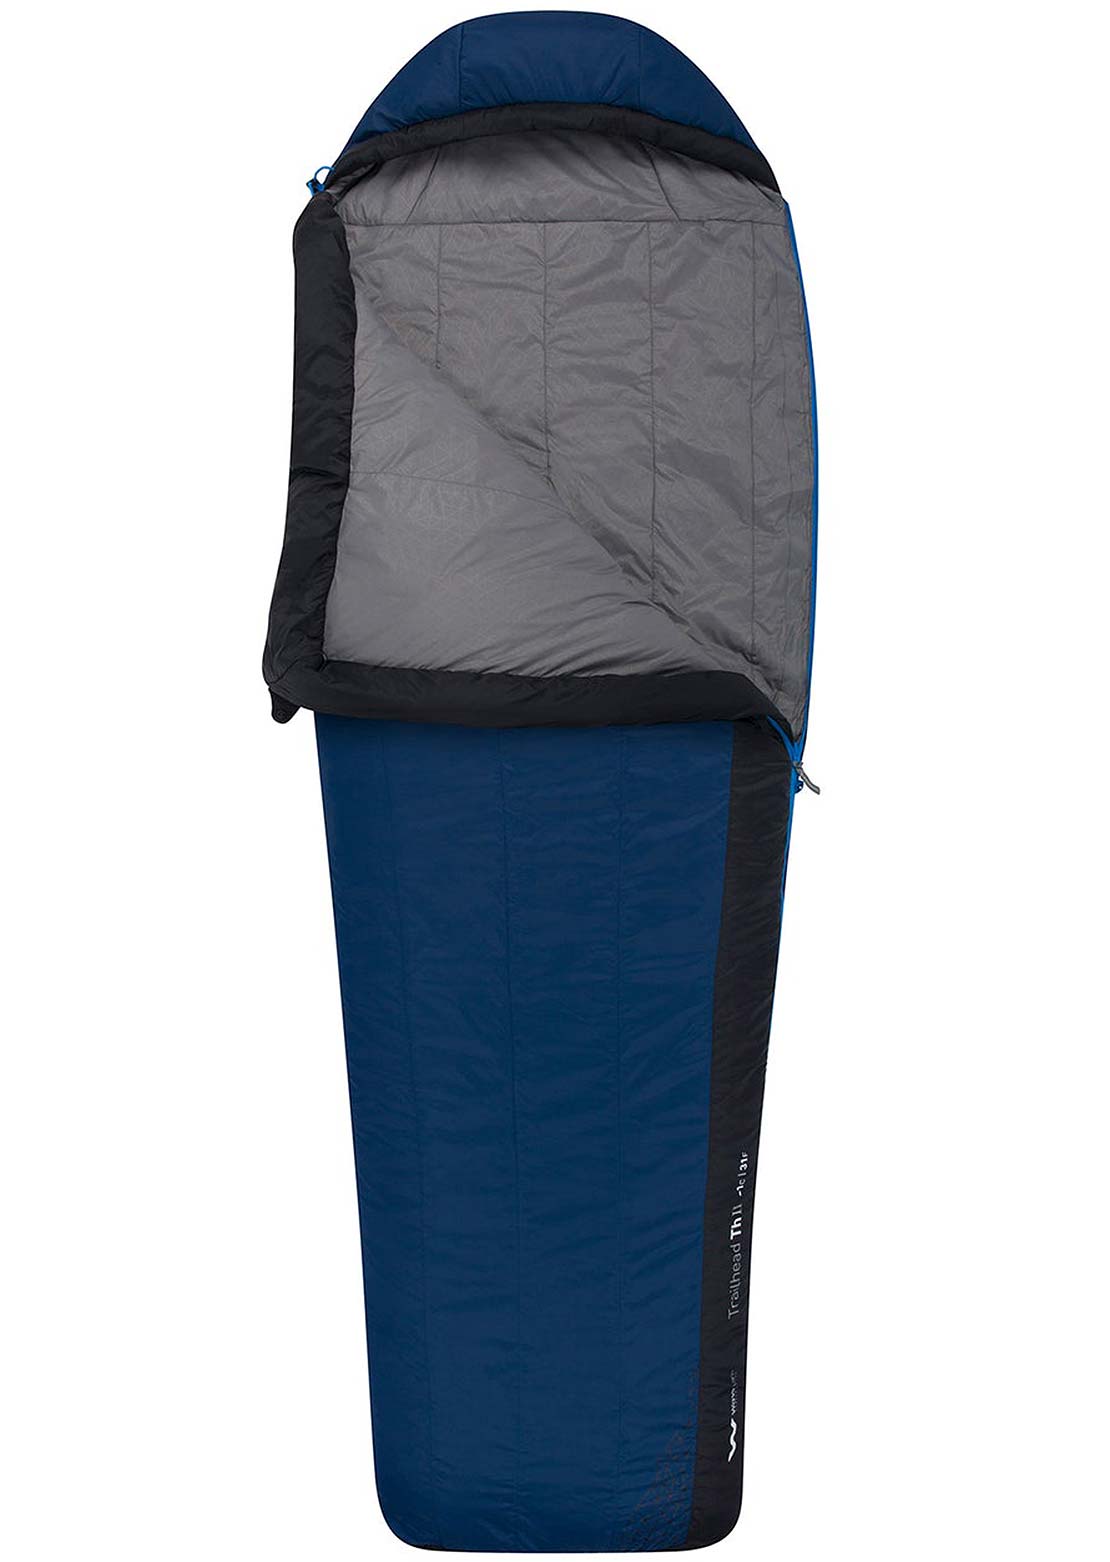 Sea To Summit Trailhead Synthetic Sleeping Bag